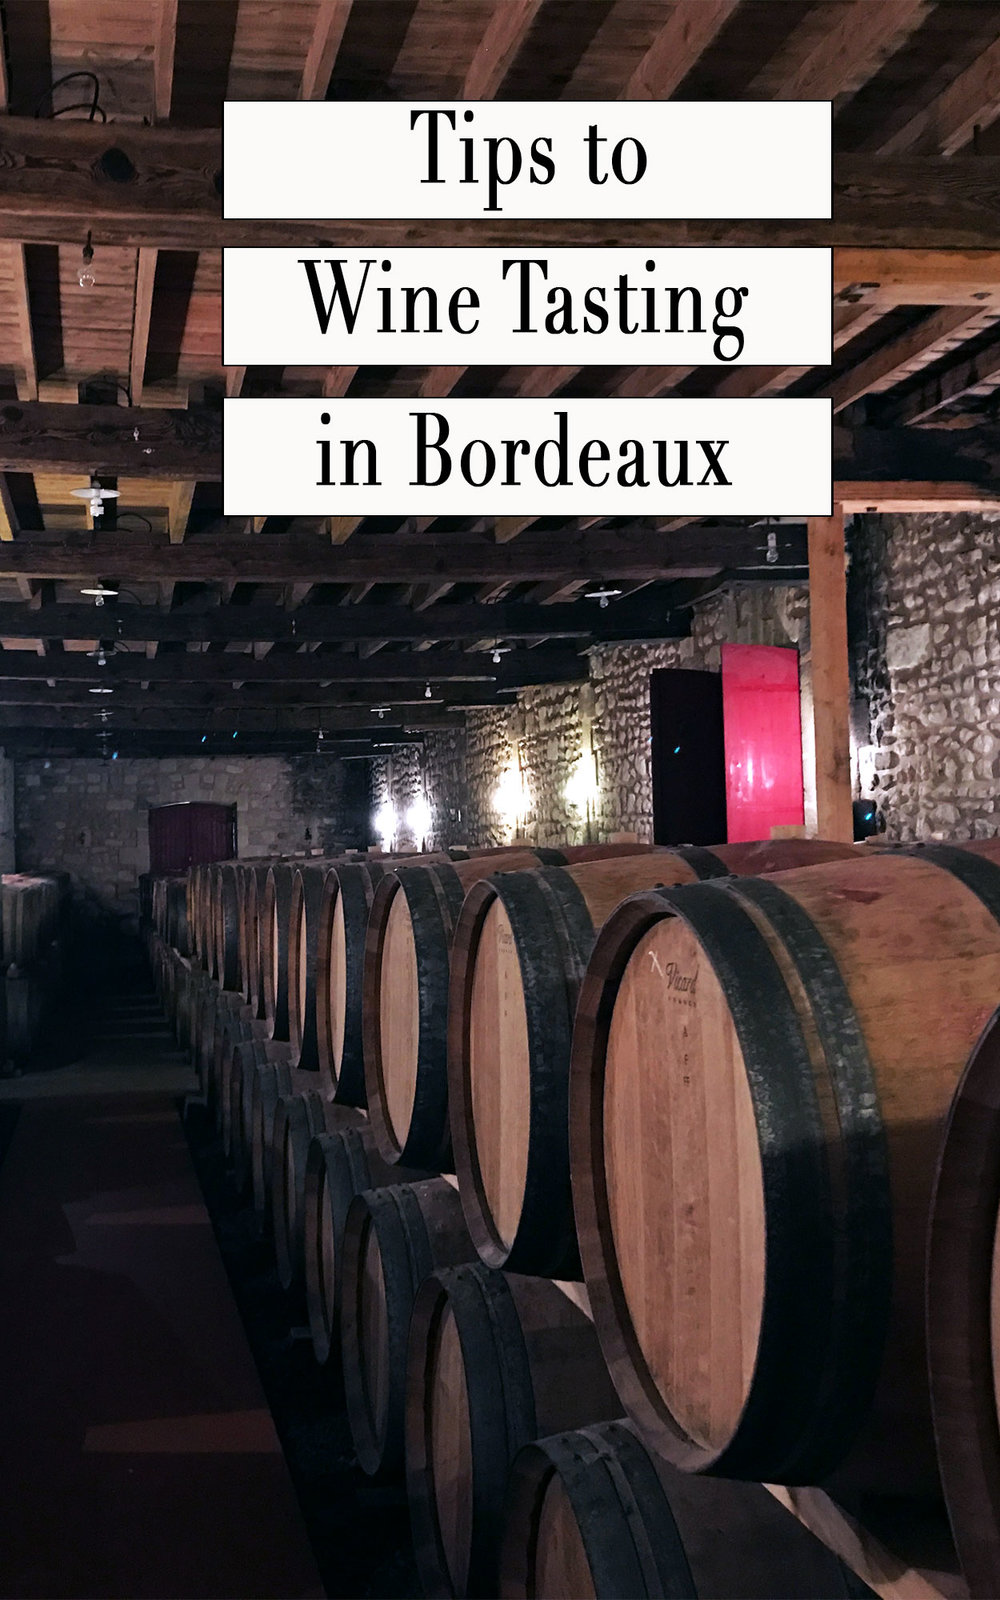 wine-tasting-in-bordeaux-tips.jpg